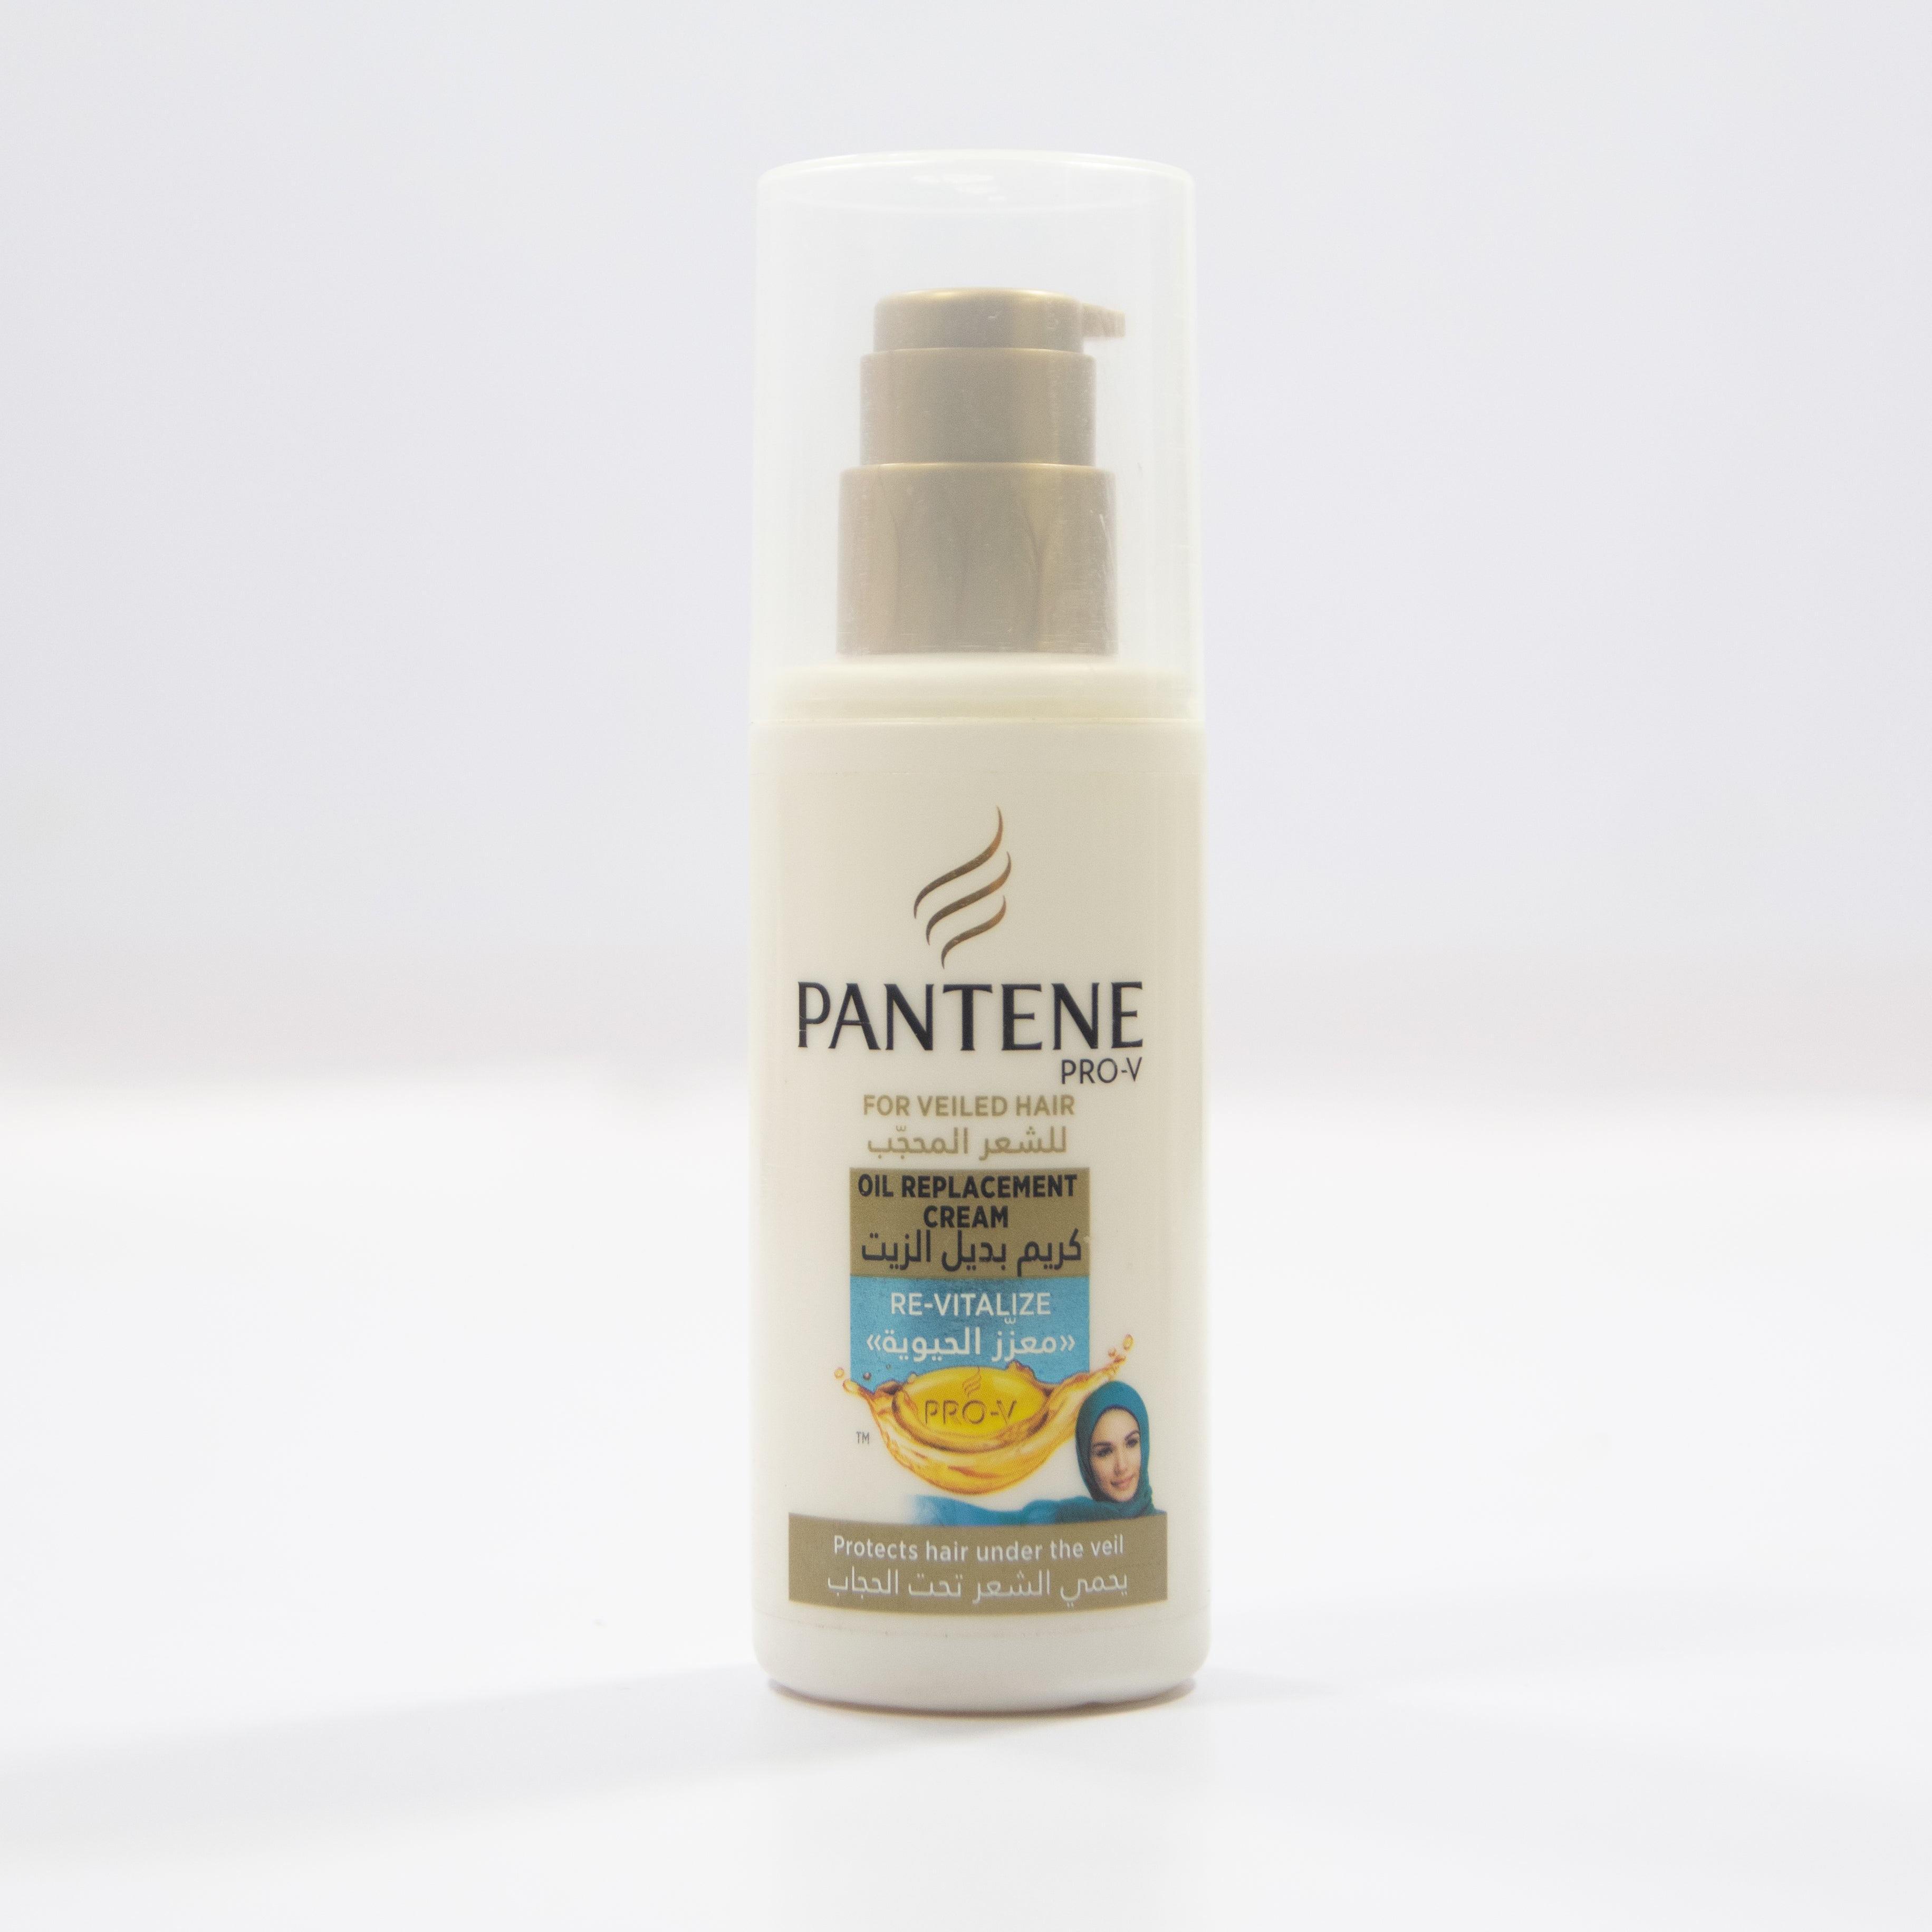 PANTENE PRO-V FOR VEILED HAIR OIL REPLACEMENT CREAM